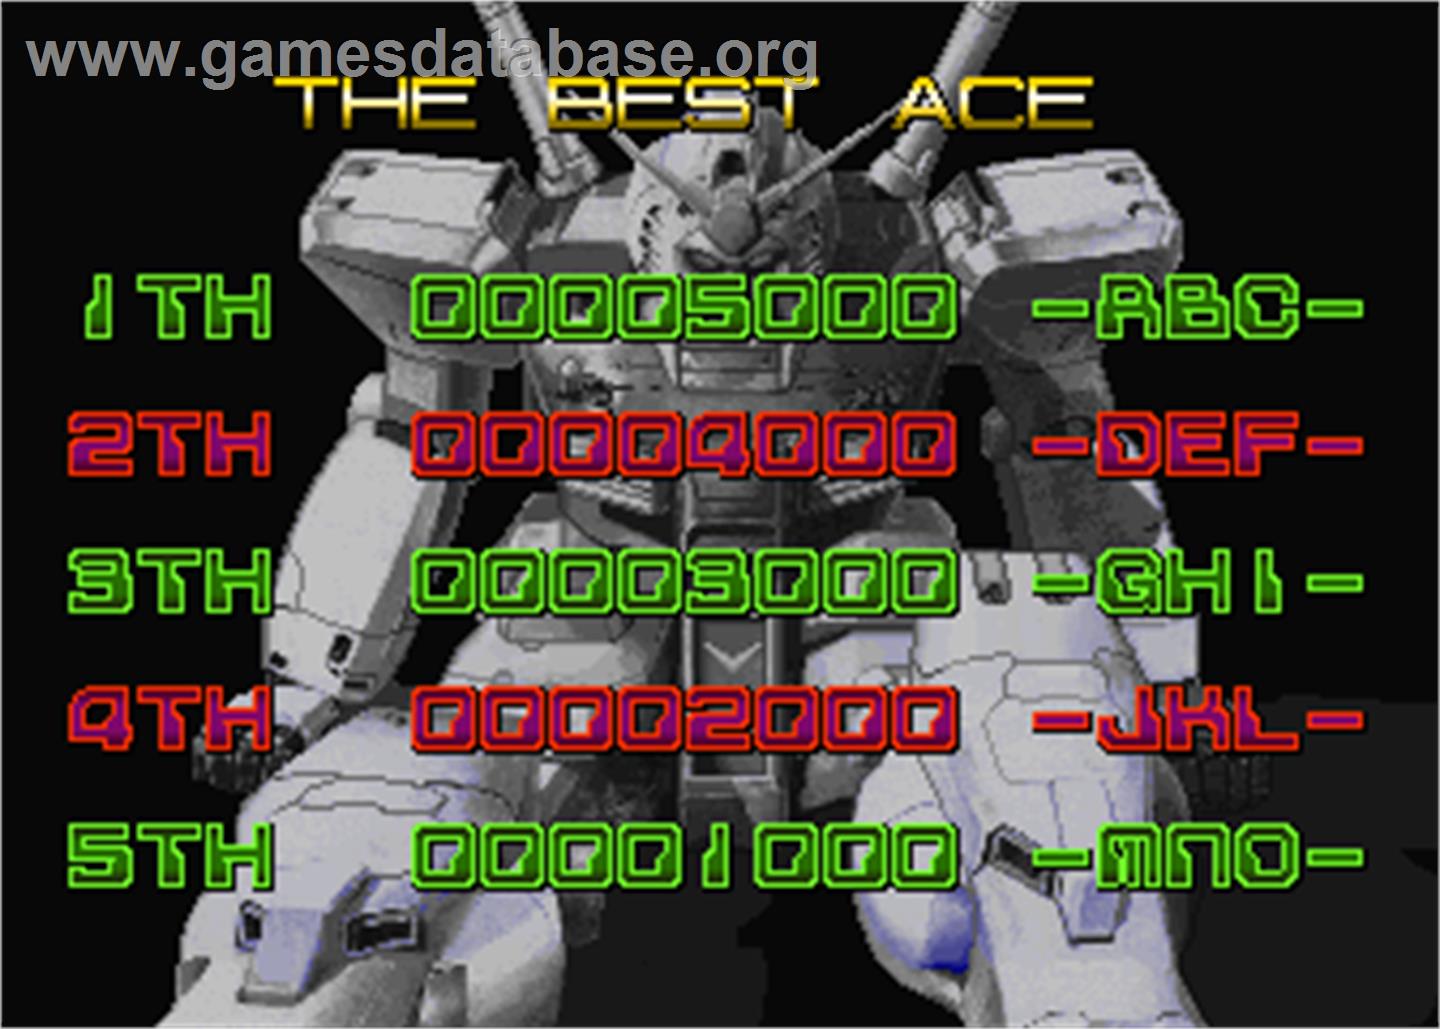 Mobil Suit Gundam Final Shooting - Arcade - Artwork - High Score Screen